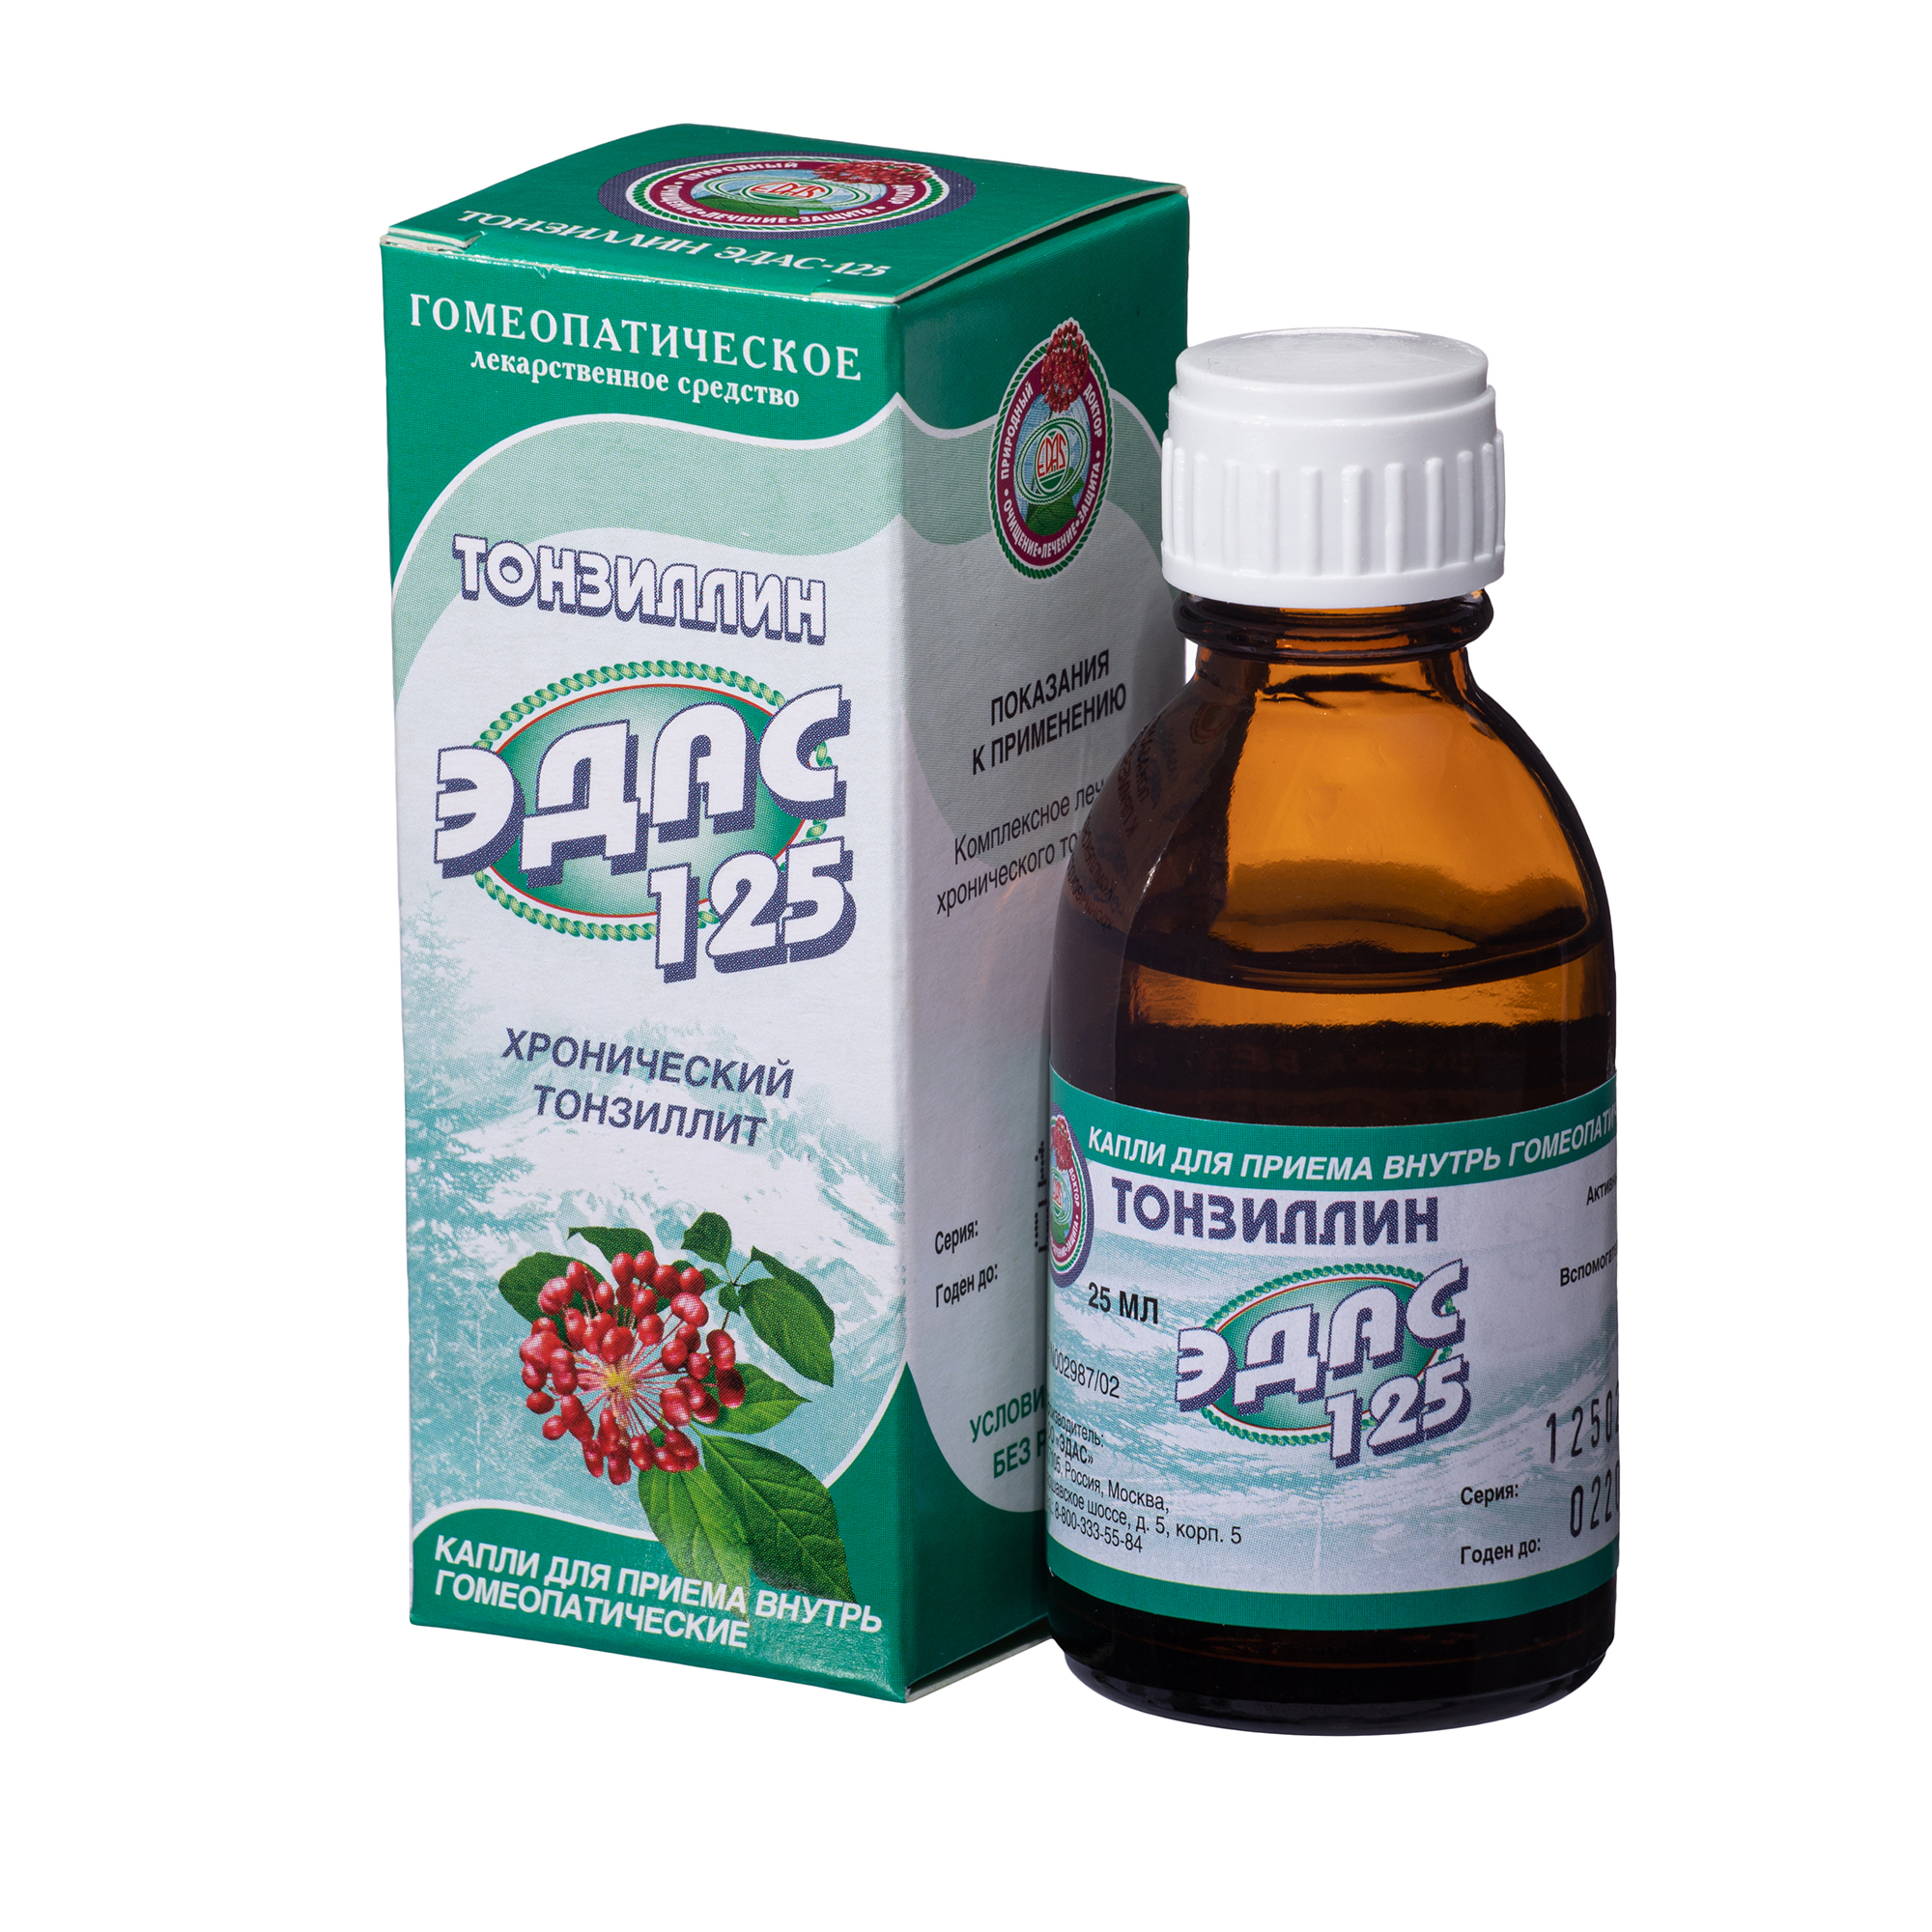 Тонзиллин Эдас-125, для лечения хронического тонзиллита, капли гом. 25 мл петербург в царствование екатерины великой